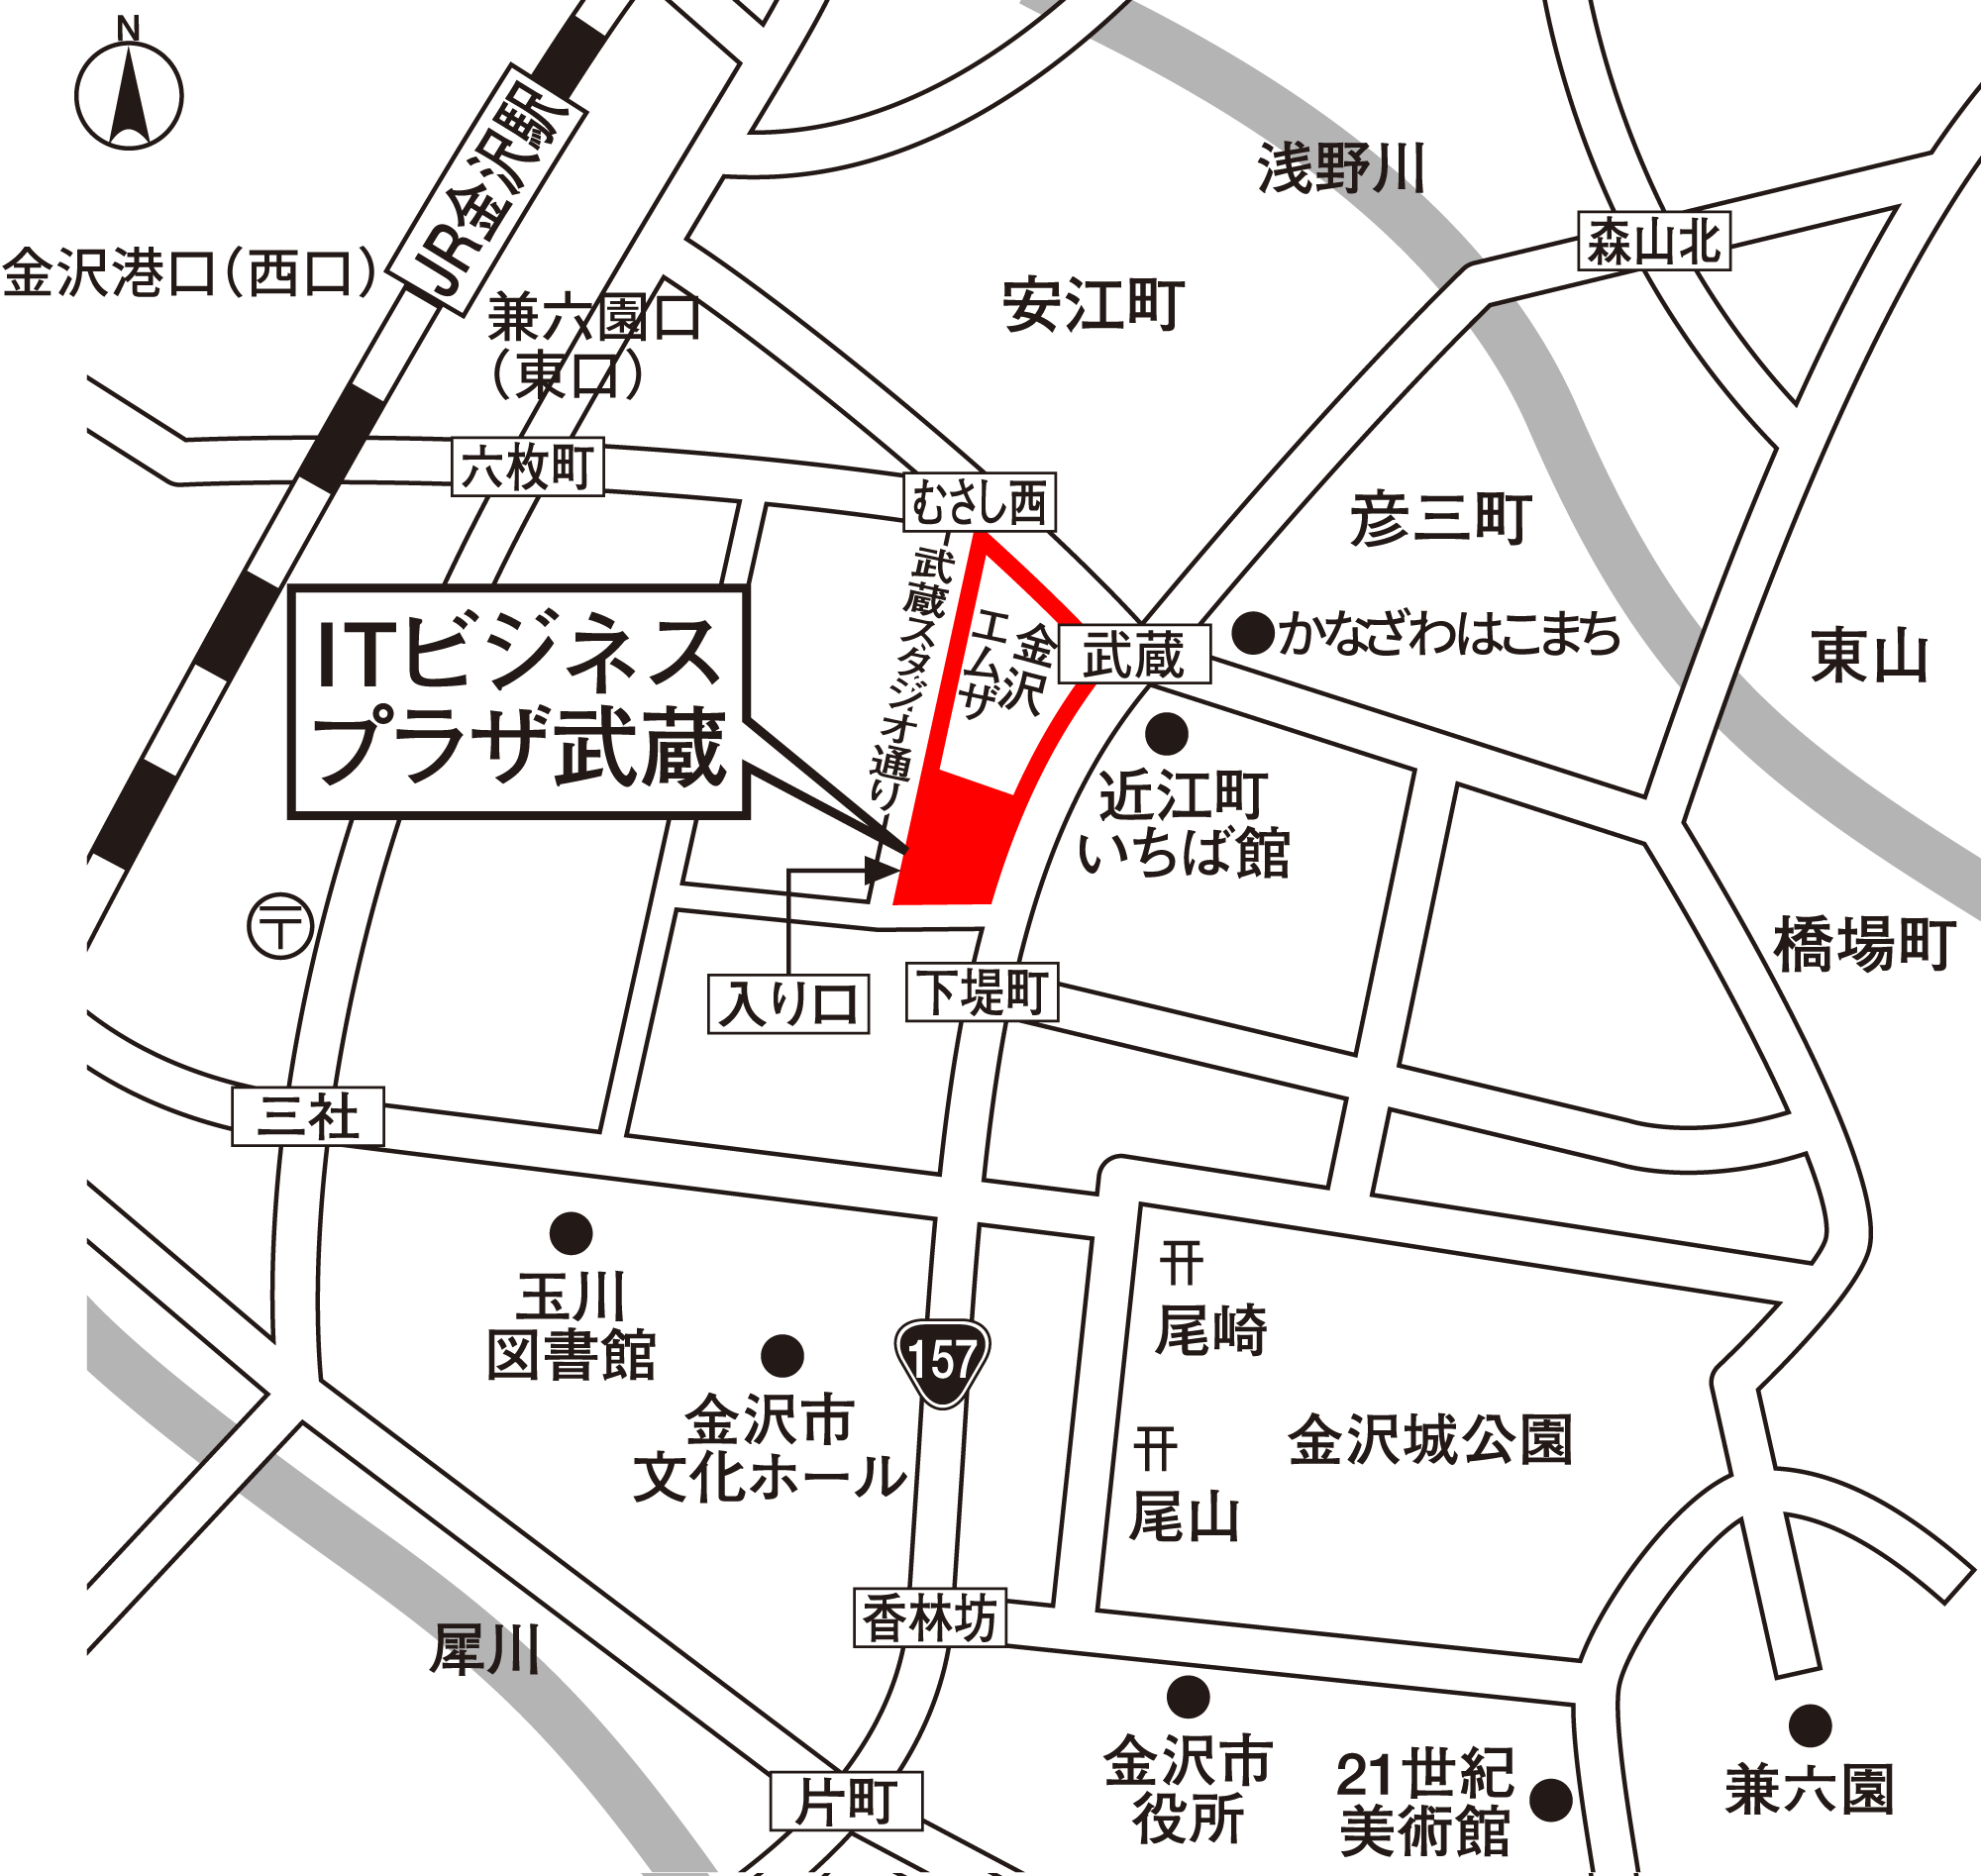 ITビジネスプラザ武蔵 地図